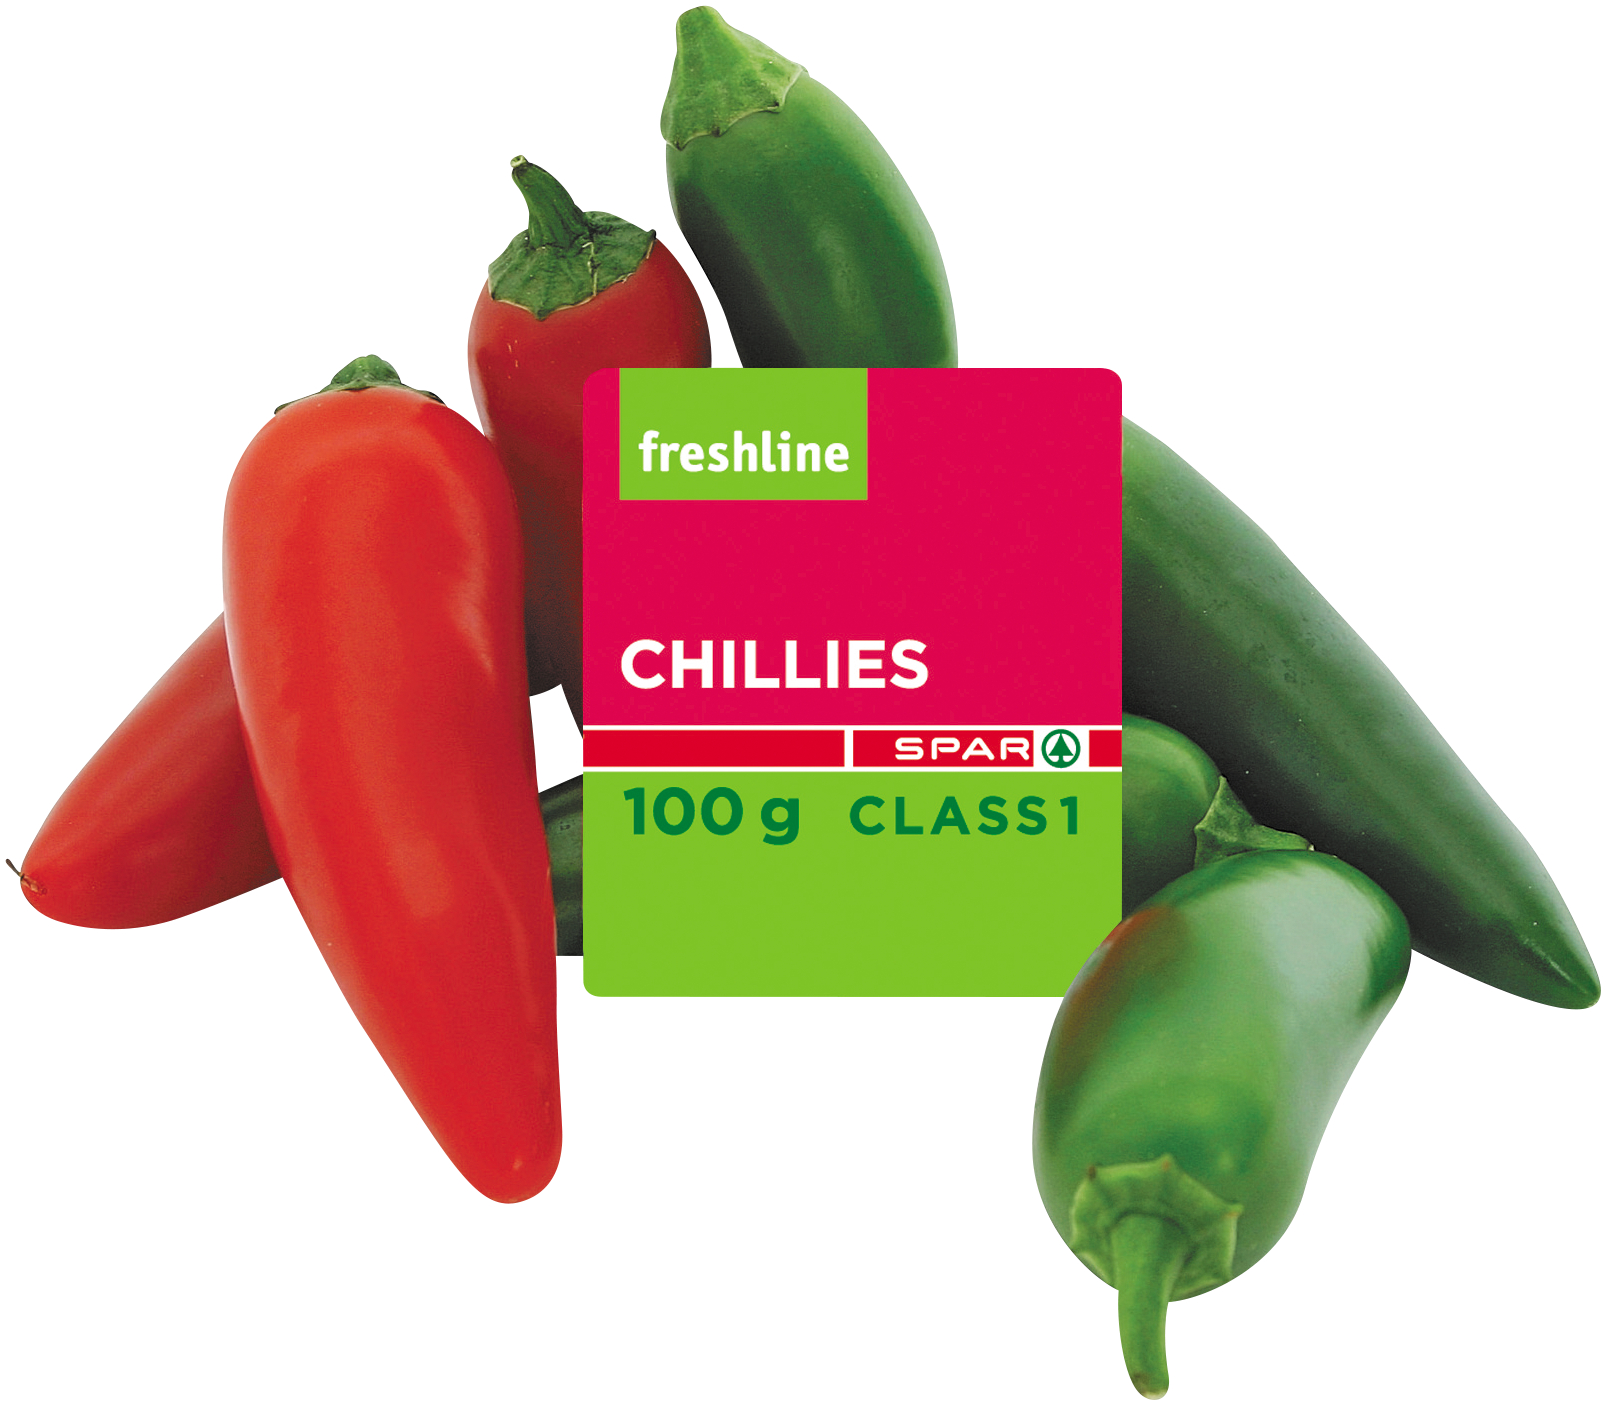 freshline chillies 